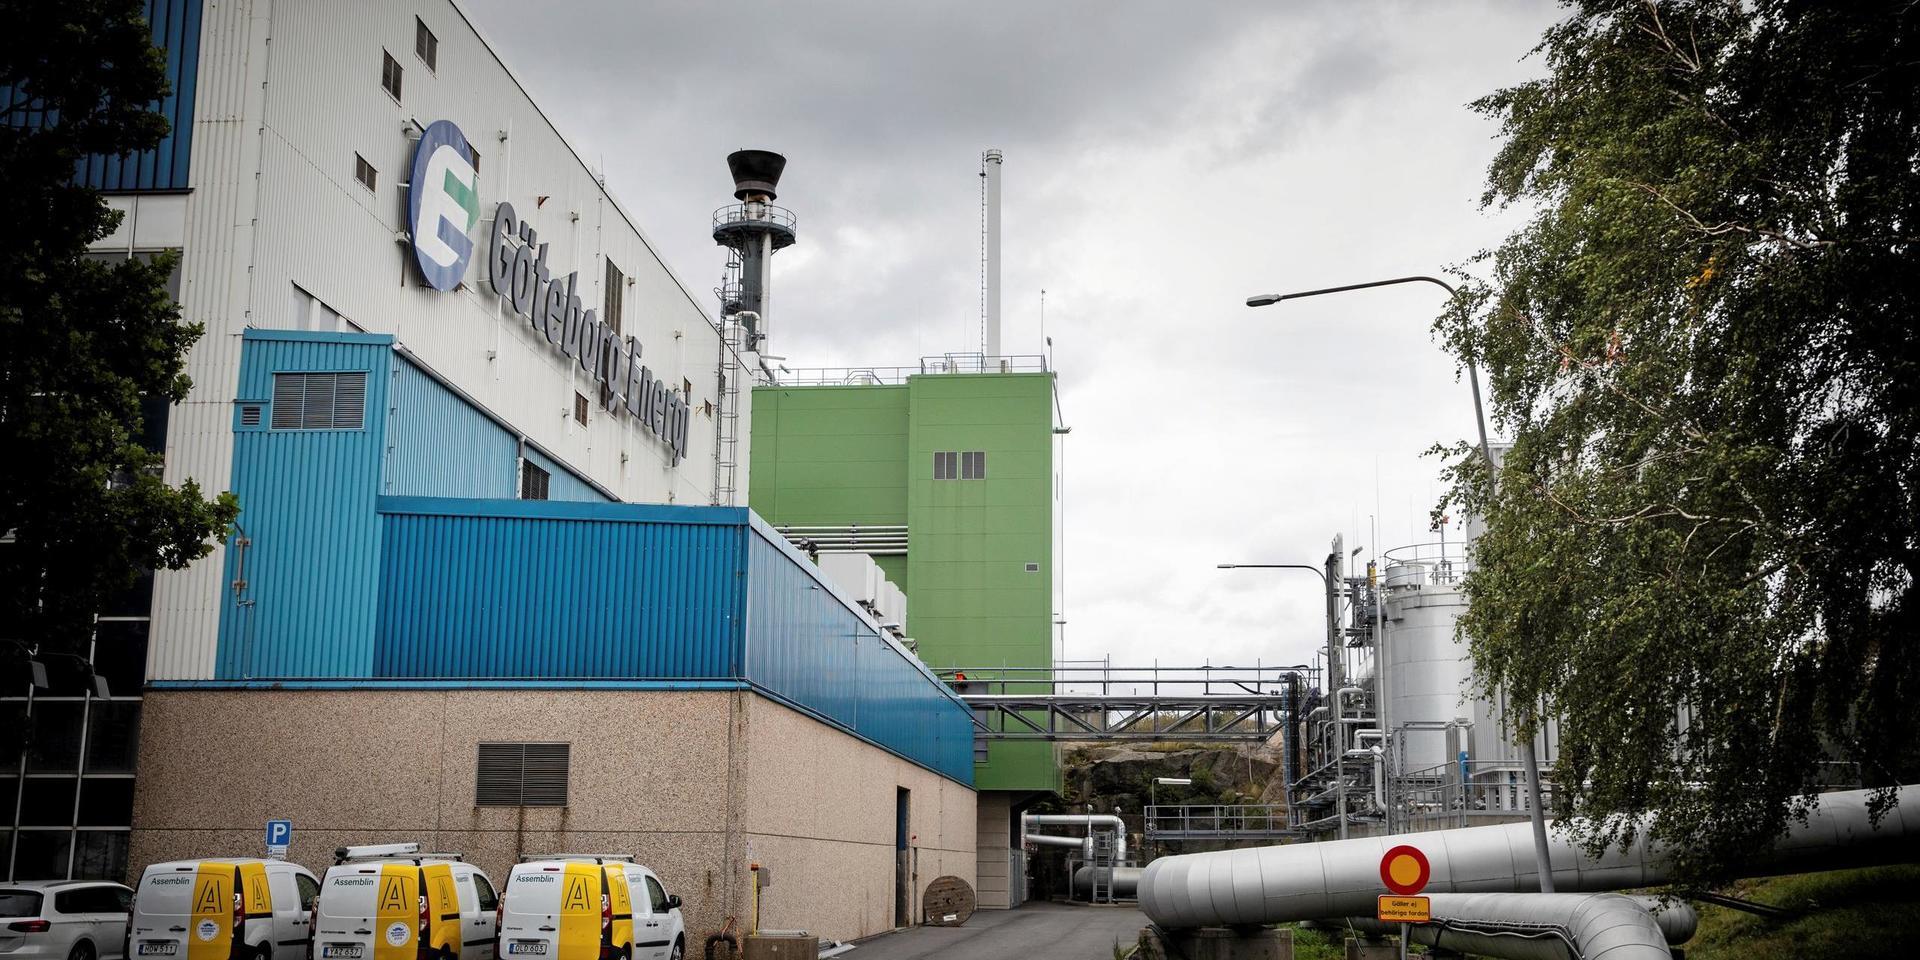 Gobigas i Göteborg kostade två miljarder och har lagts ner, medan Preem har producerat fossilfritt bränsle i 15 år. Orsaken är Preems breda kompetens, menar Kristoffer Utbult.